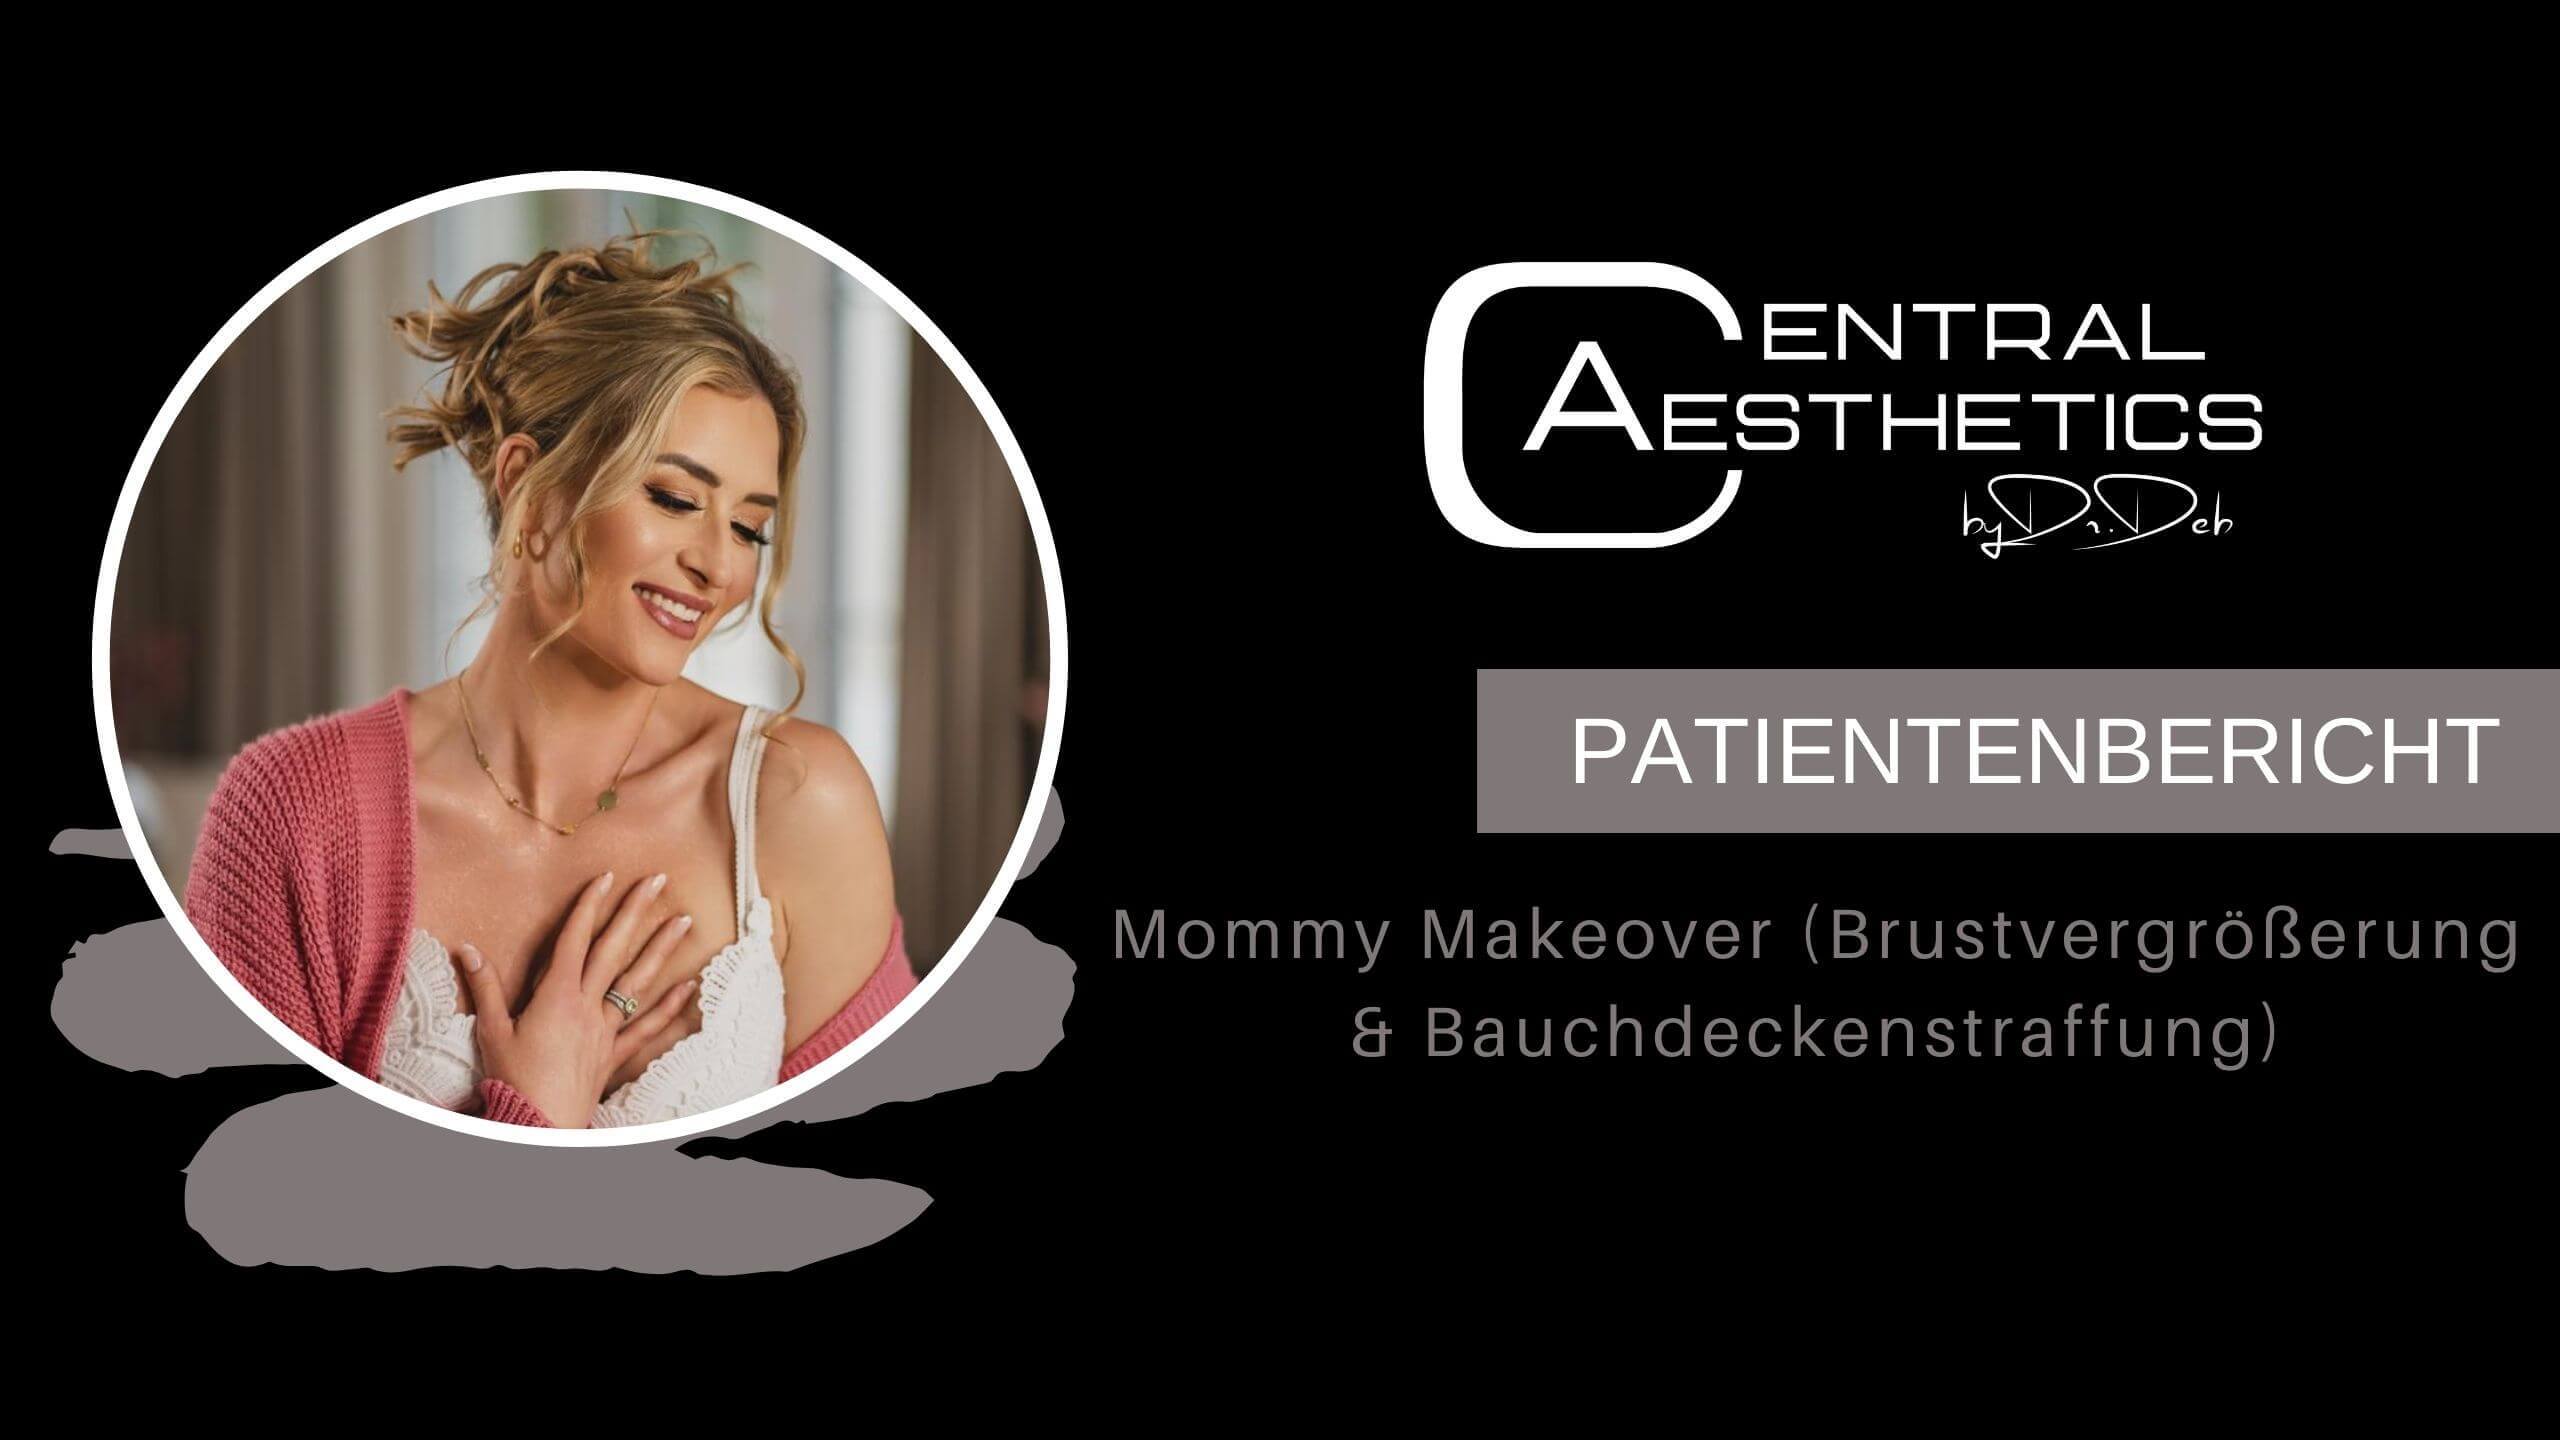 Video Mommy Makeover Patientenbericht, Dr. Deb, Central Aesthetics, Plastische Chirurgie Frankfurt